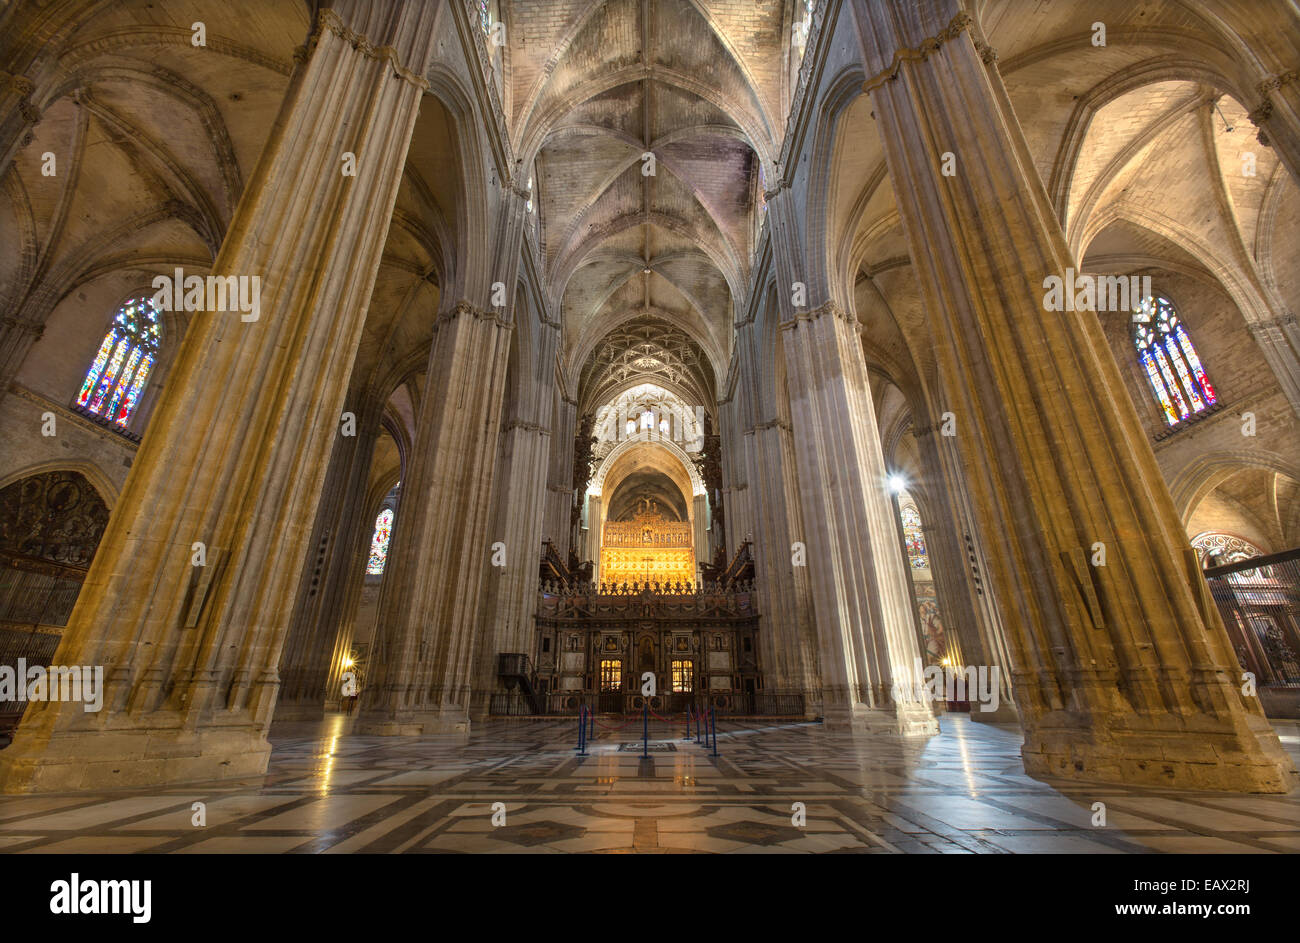 Siviglia, Spagna - 29 ottobre 2014: Interno della cattedrale de Santa Maria de la sede. Foto Stock